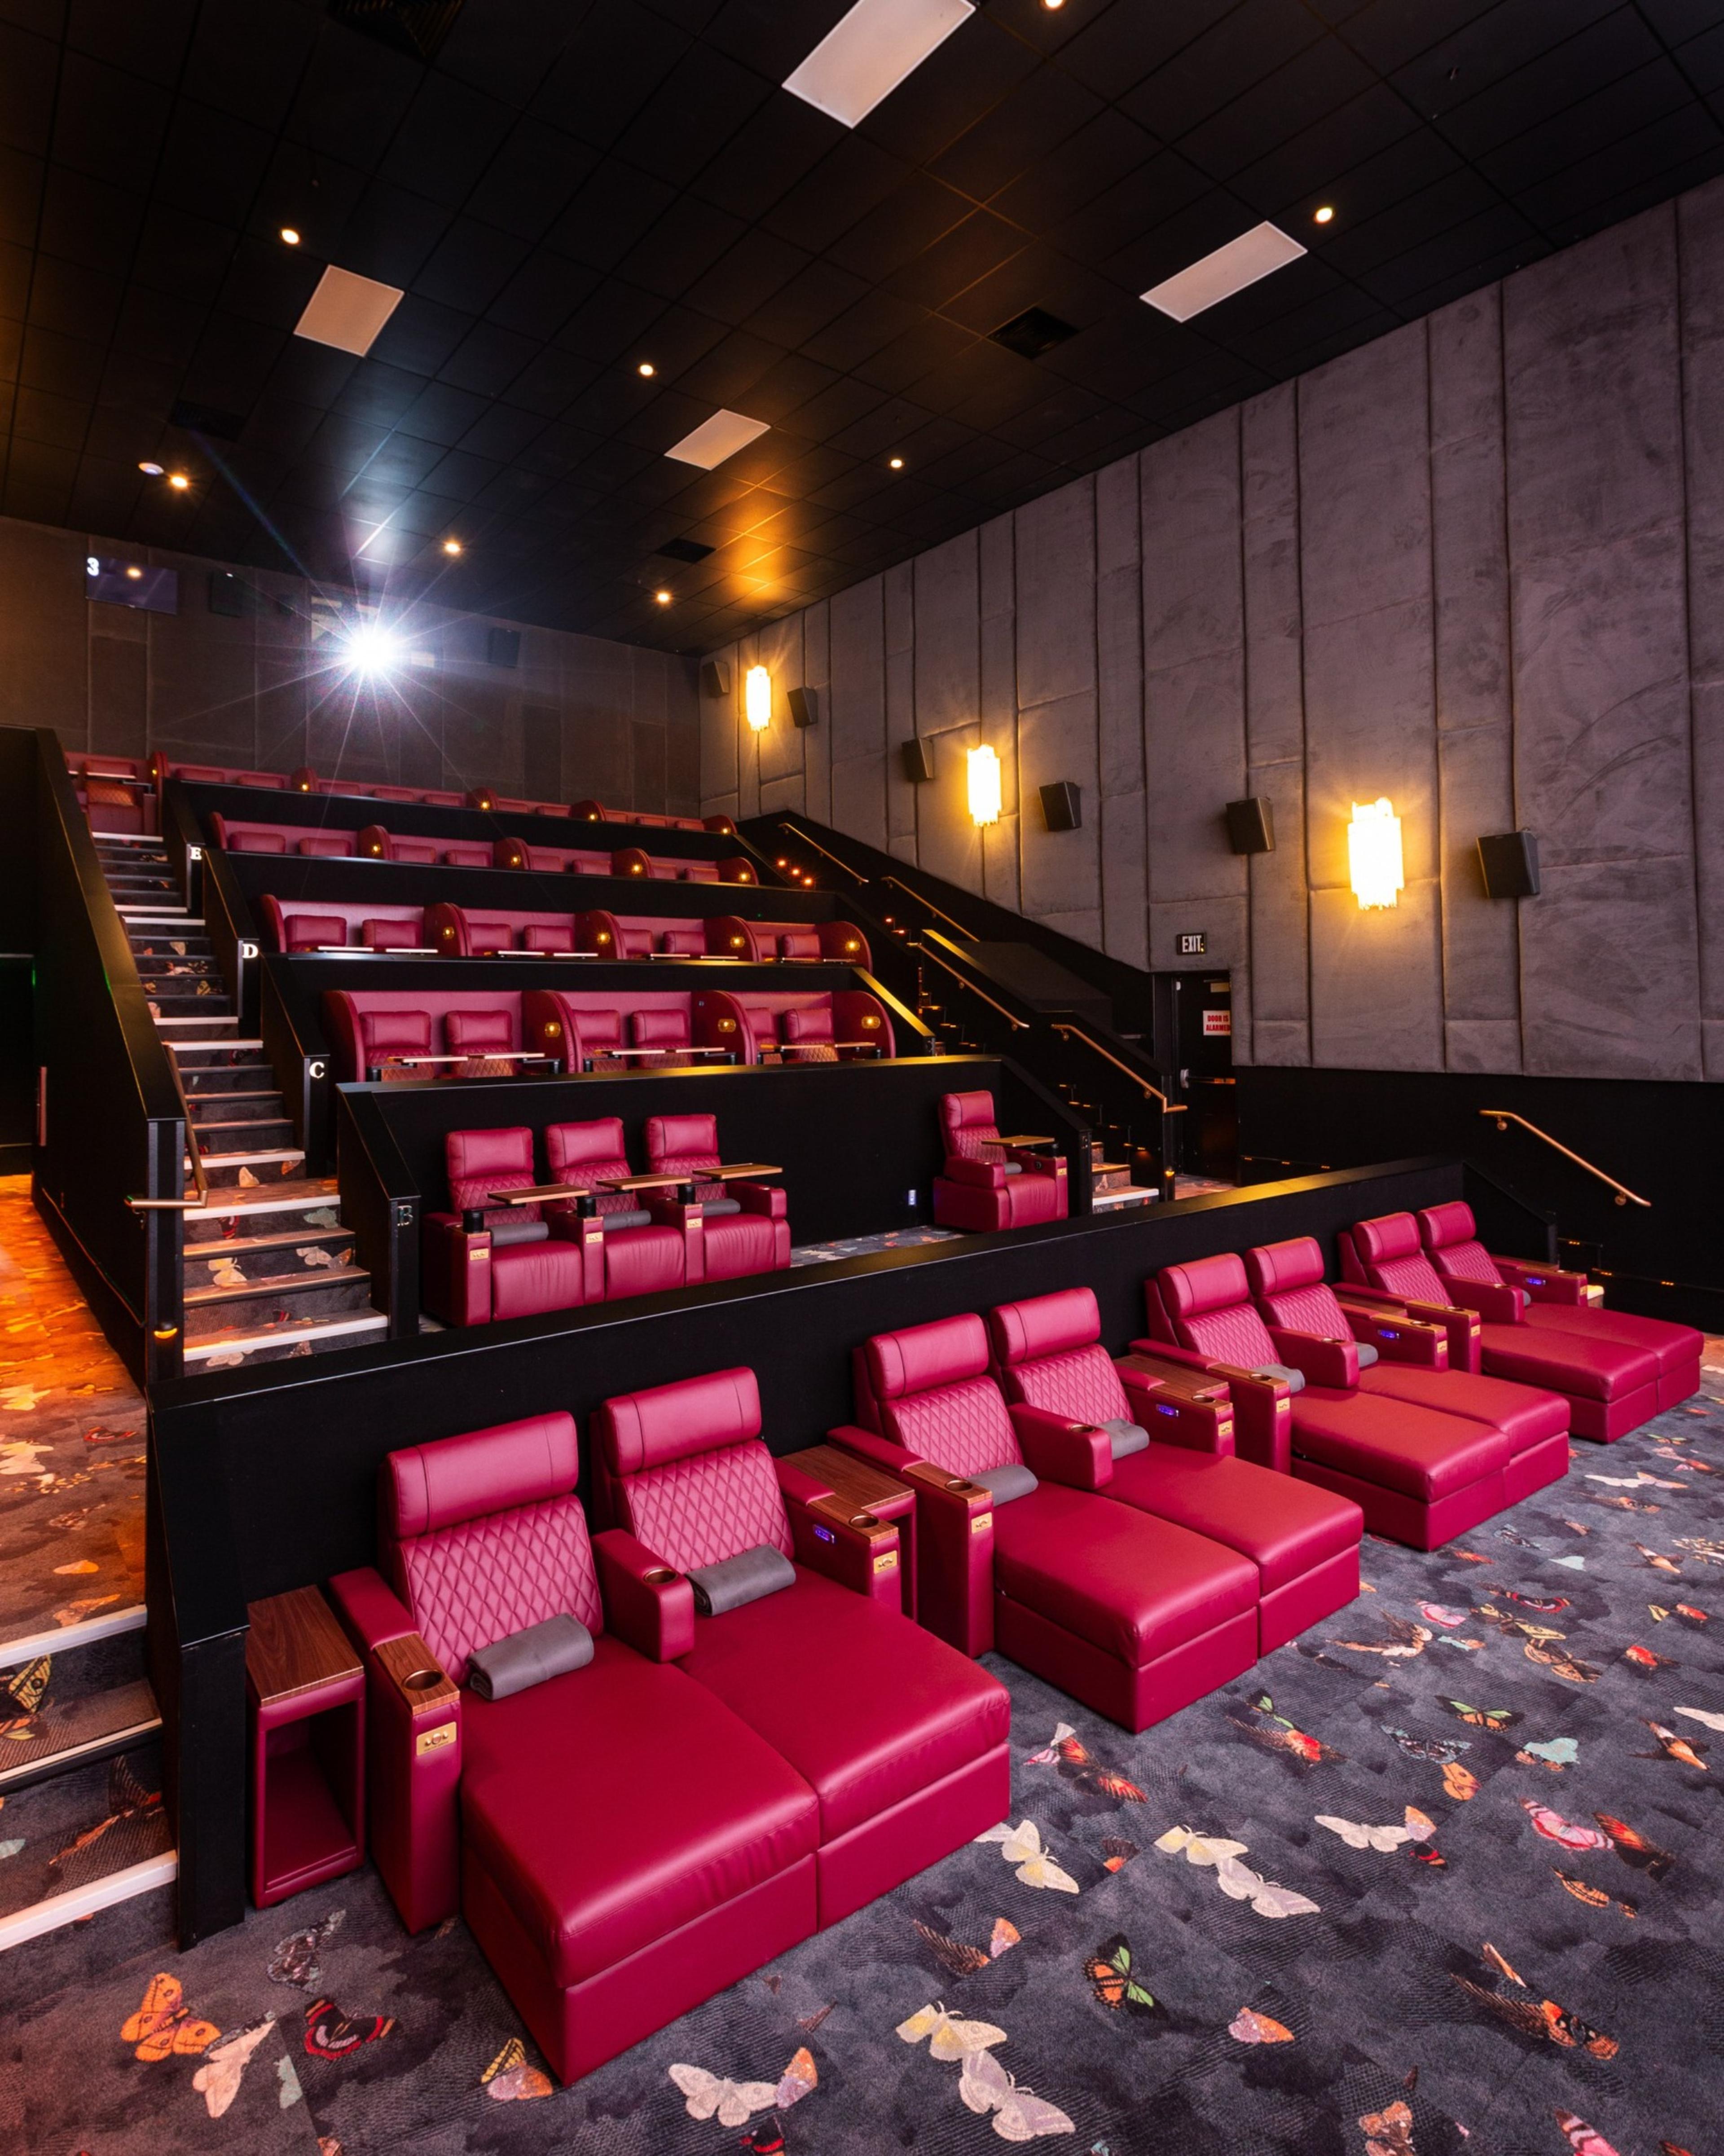 Reel Luxury Cinemas in The Woodlands, TX - Cinema Treasures